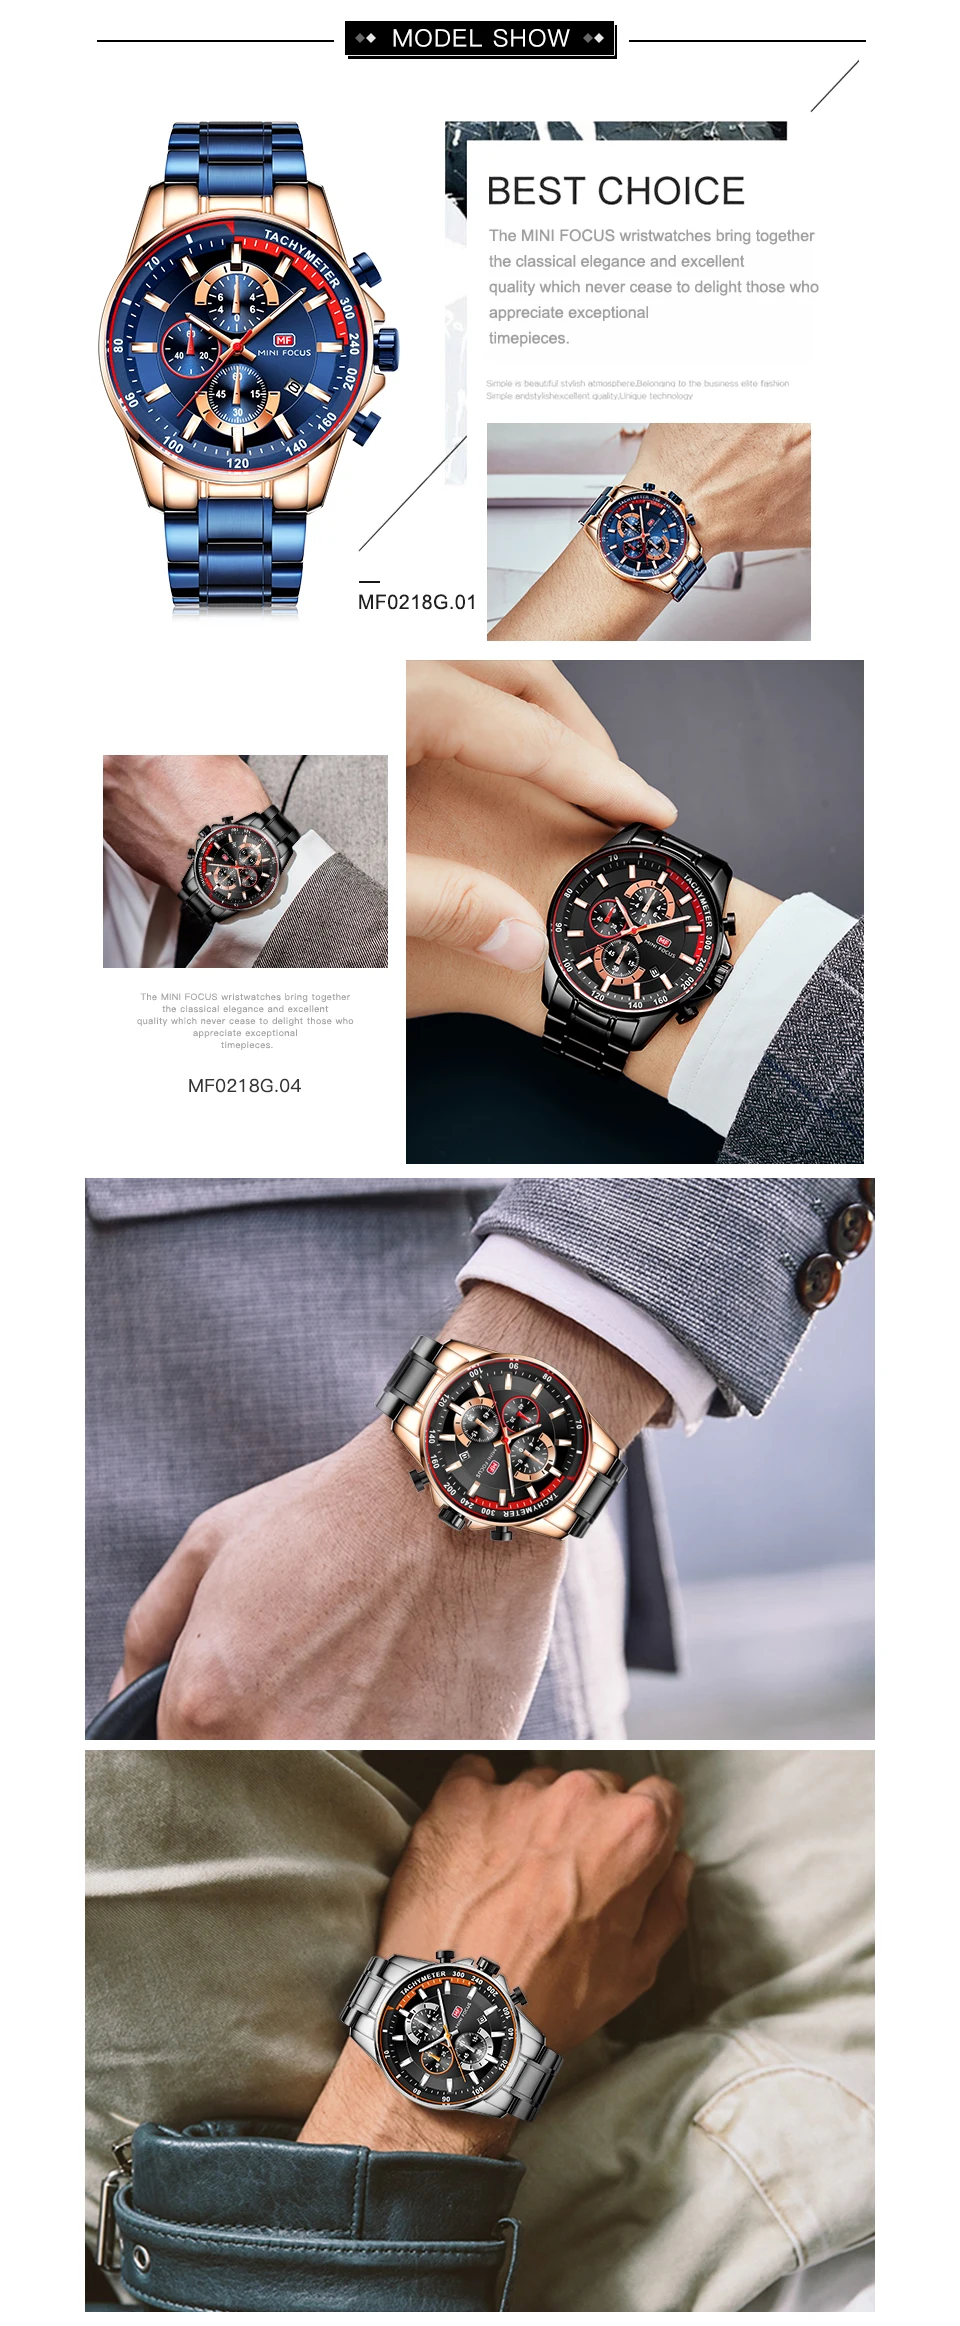 MINI FOCUS MF0218Gストレージクリエイティブアナログウォッチ3ダイヤルクロノグラフステンレス スチールストラップキングフォーマル高品質男性用時計| Alibaba.com